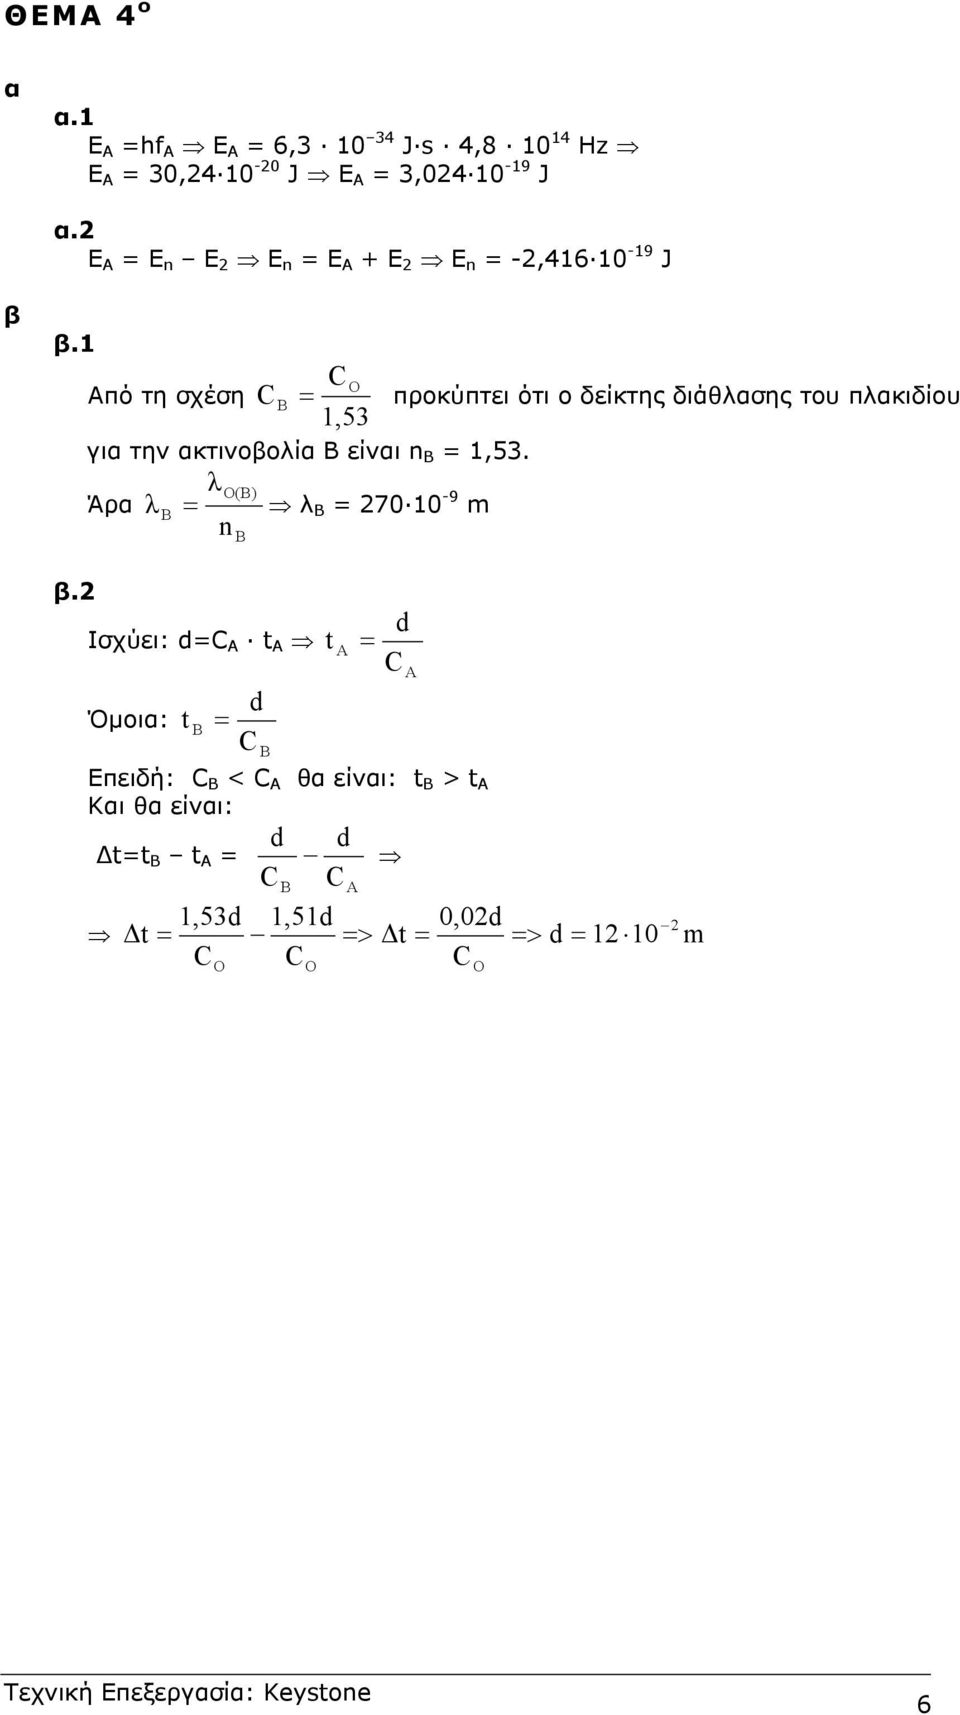 1 Από τη σχέση = προκύπτει ότι ο δείκτης διάθασης του πακιδίου 1,53 για την ακτινοβοία είναι n =